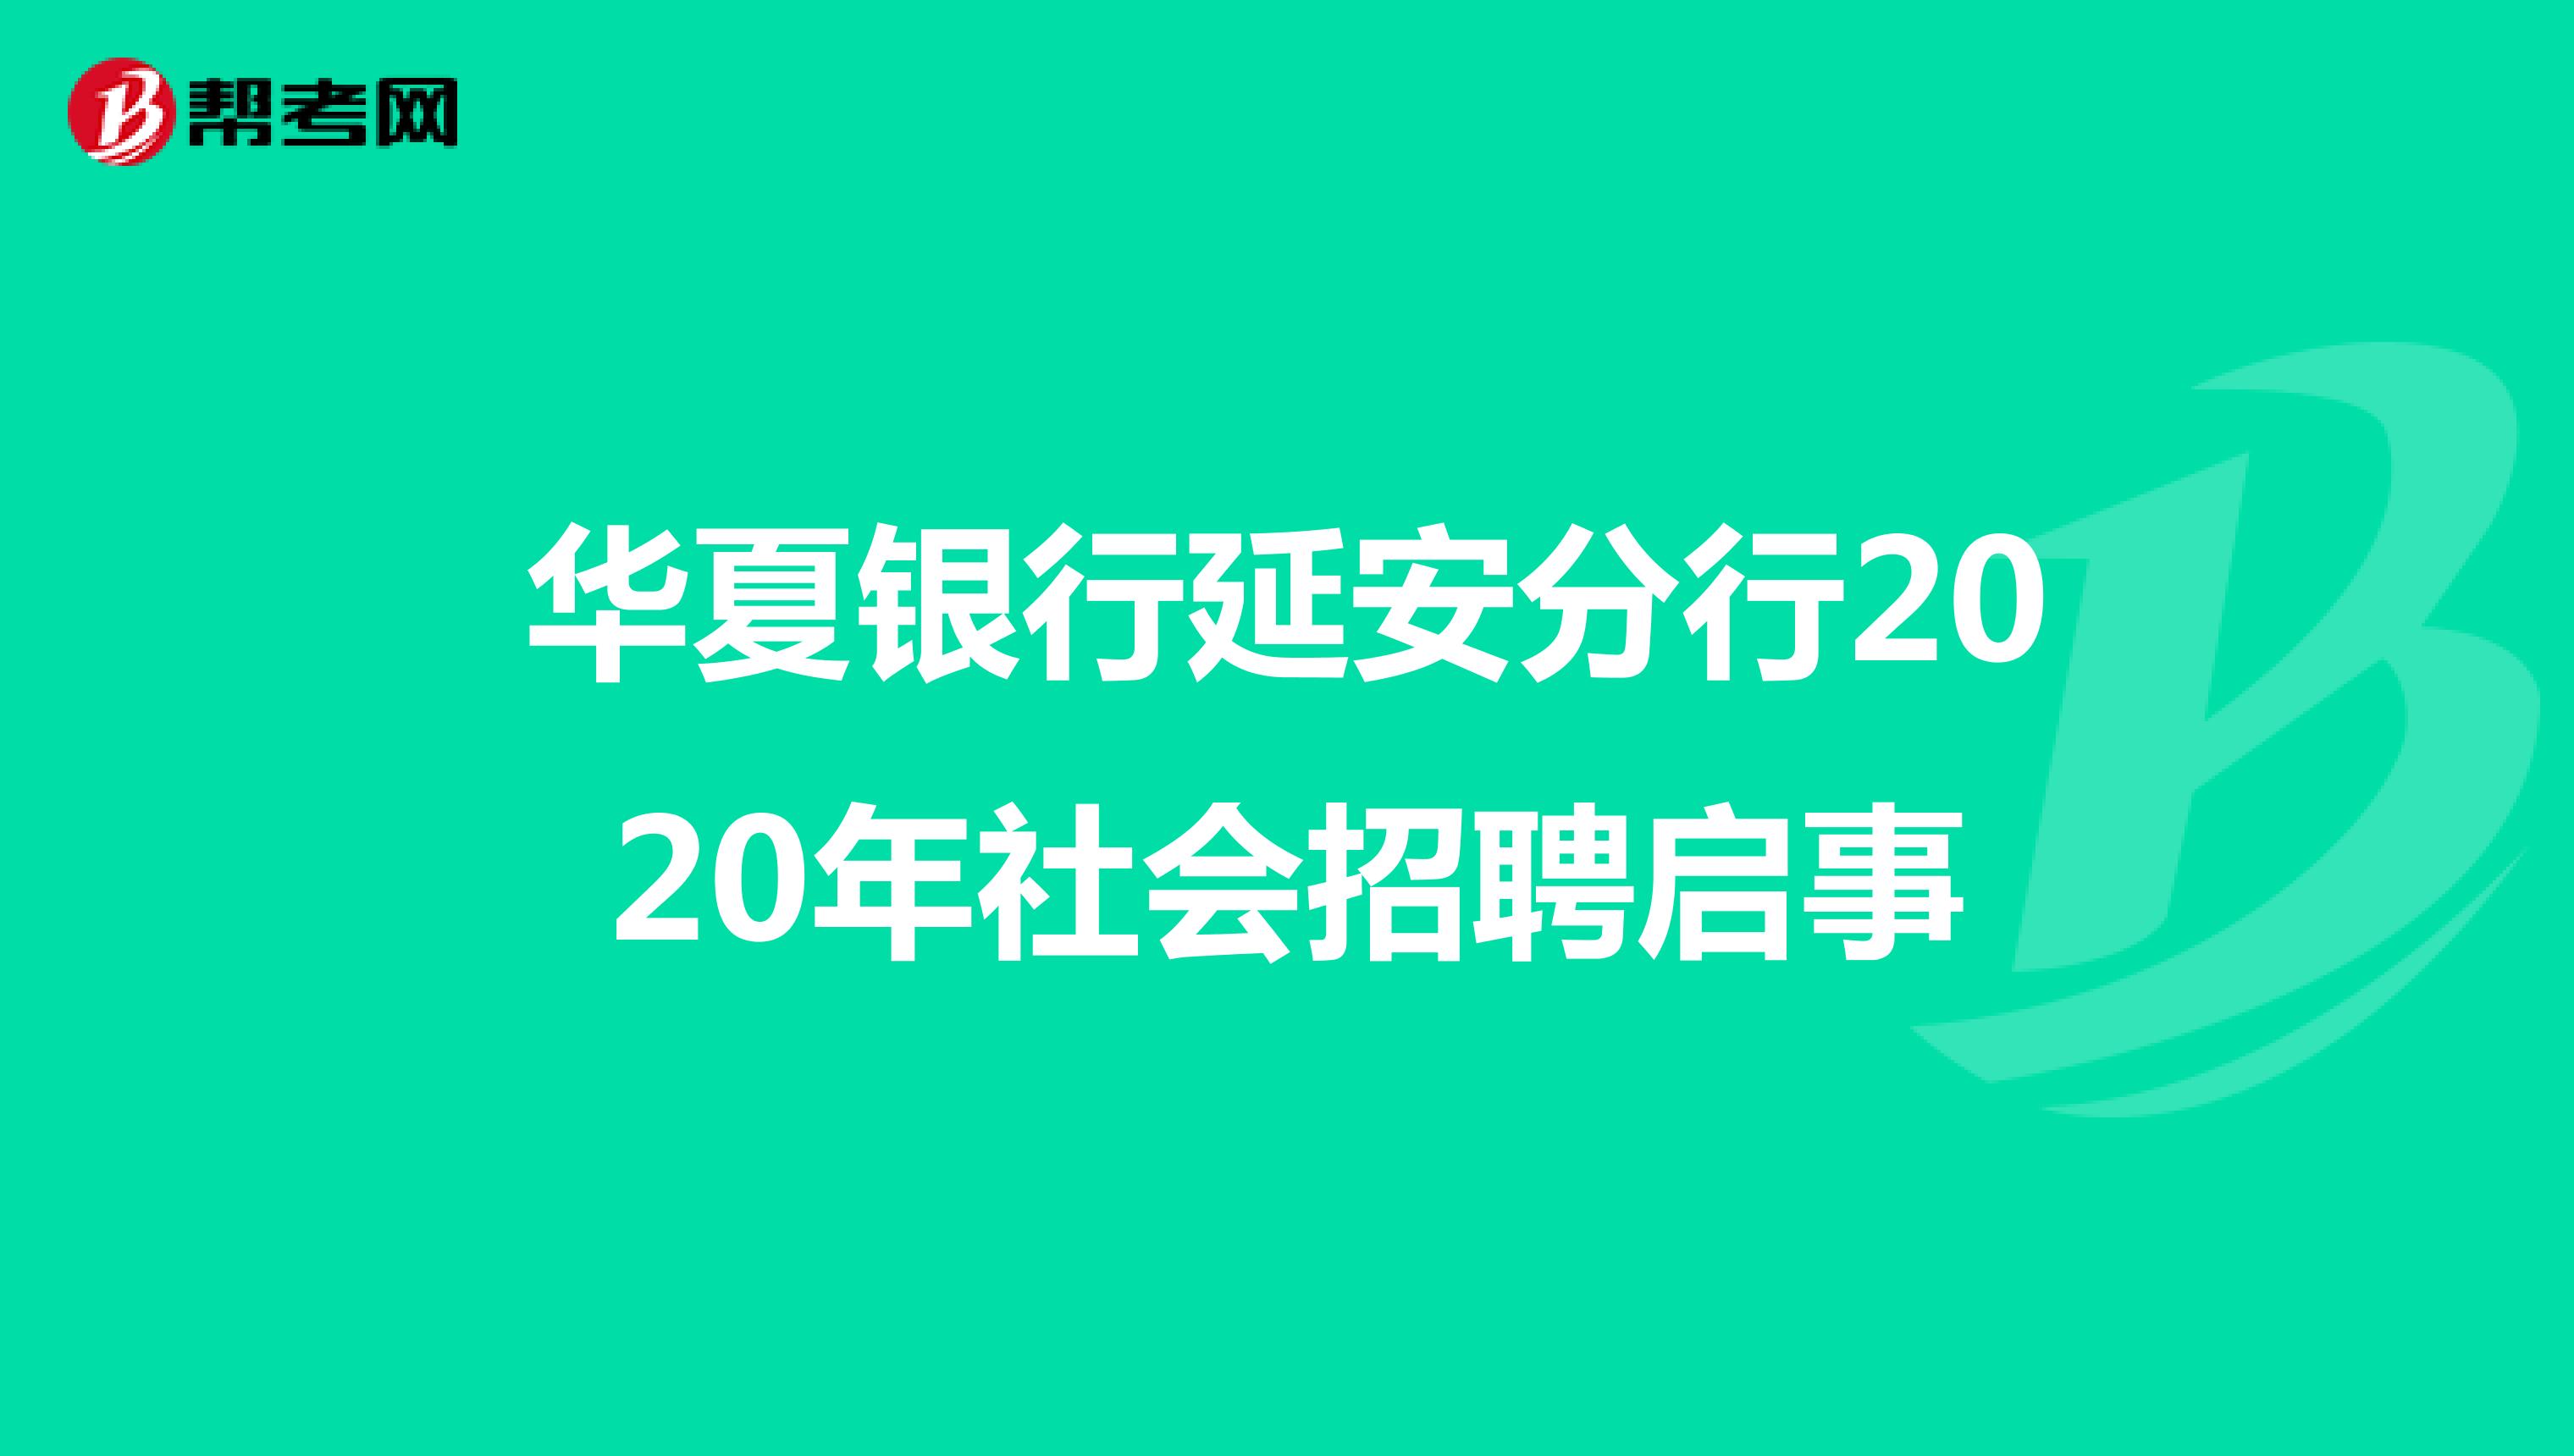 华夏银行延安分行2020年社会招聘启事